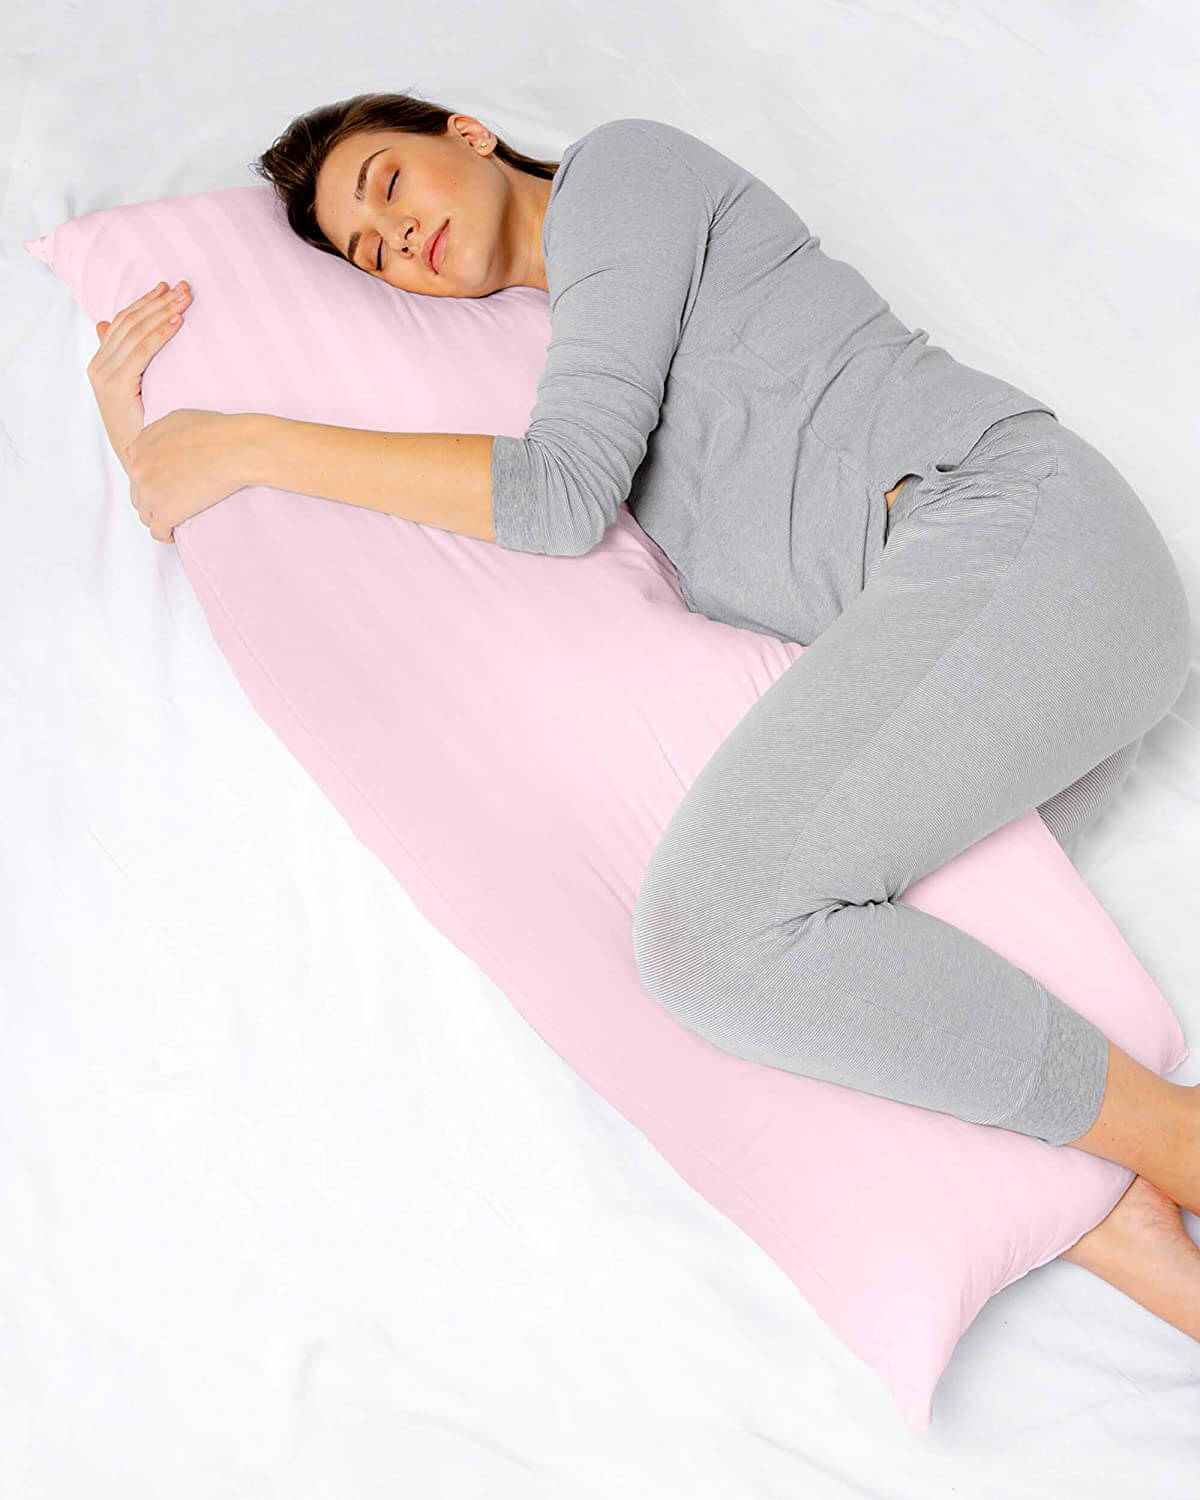 Sử dụng gối ôm cao su khi ngủ, giúp bà bầu không còn tình trạng đau lưng